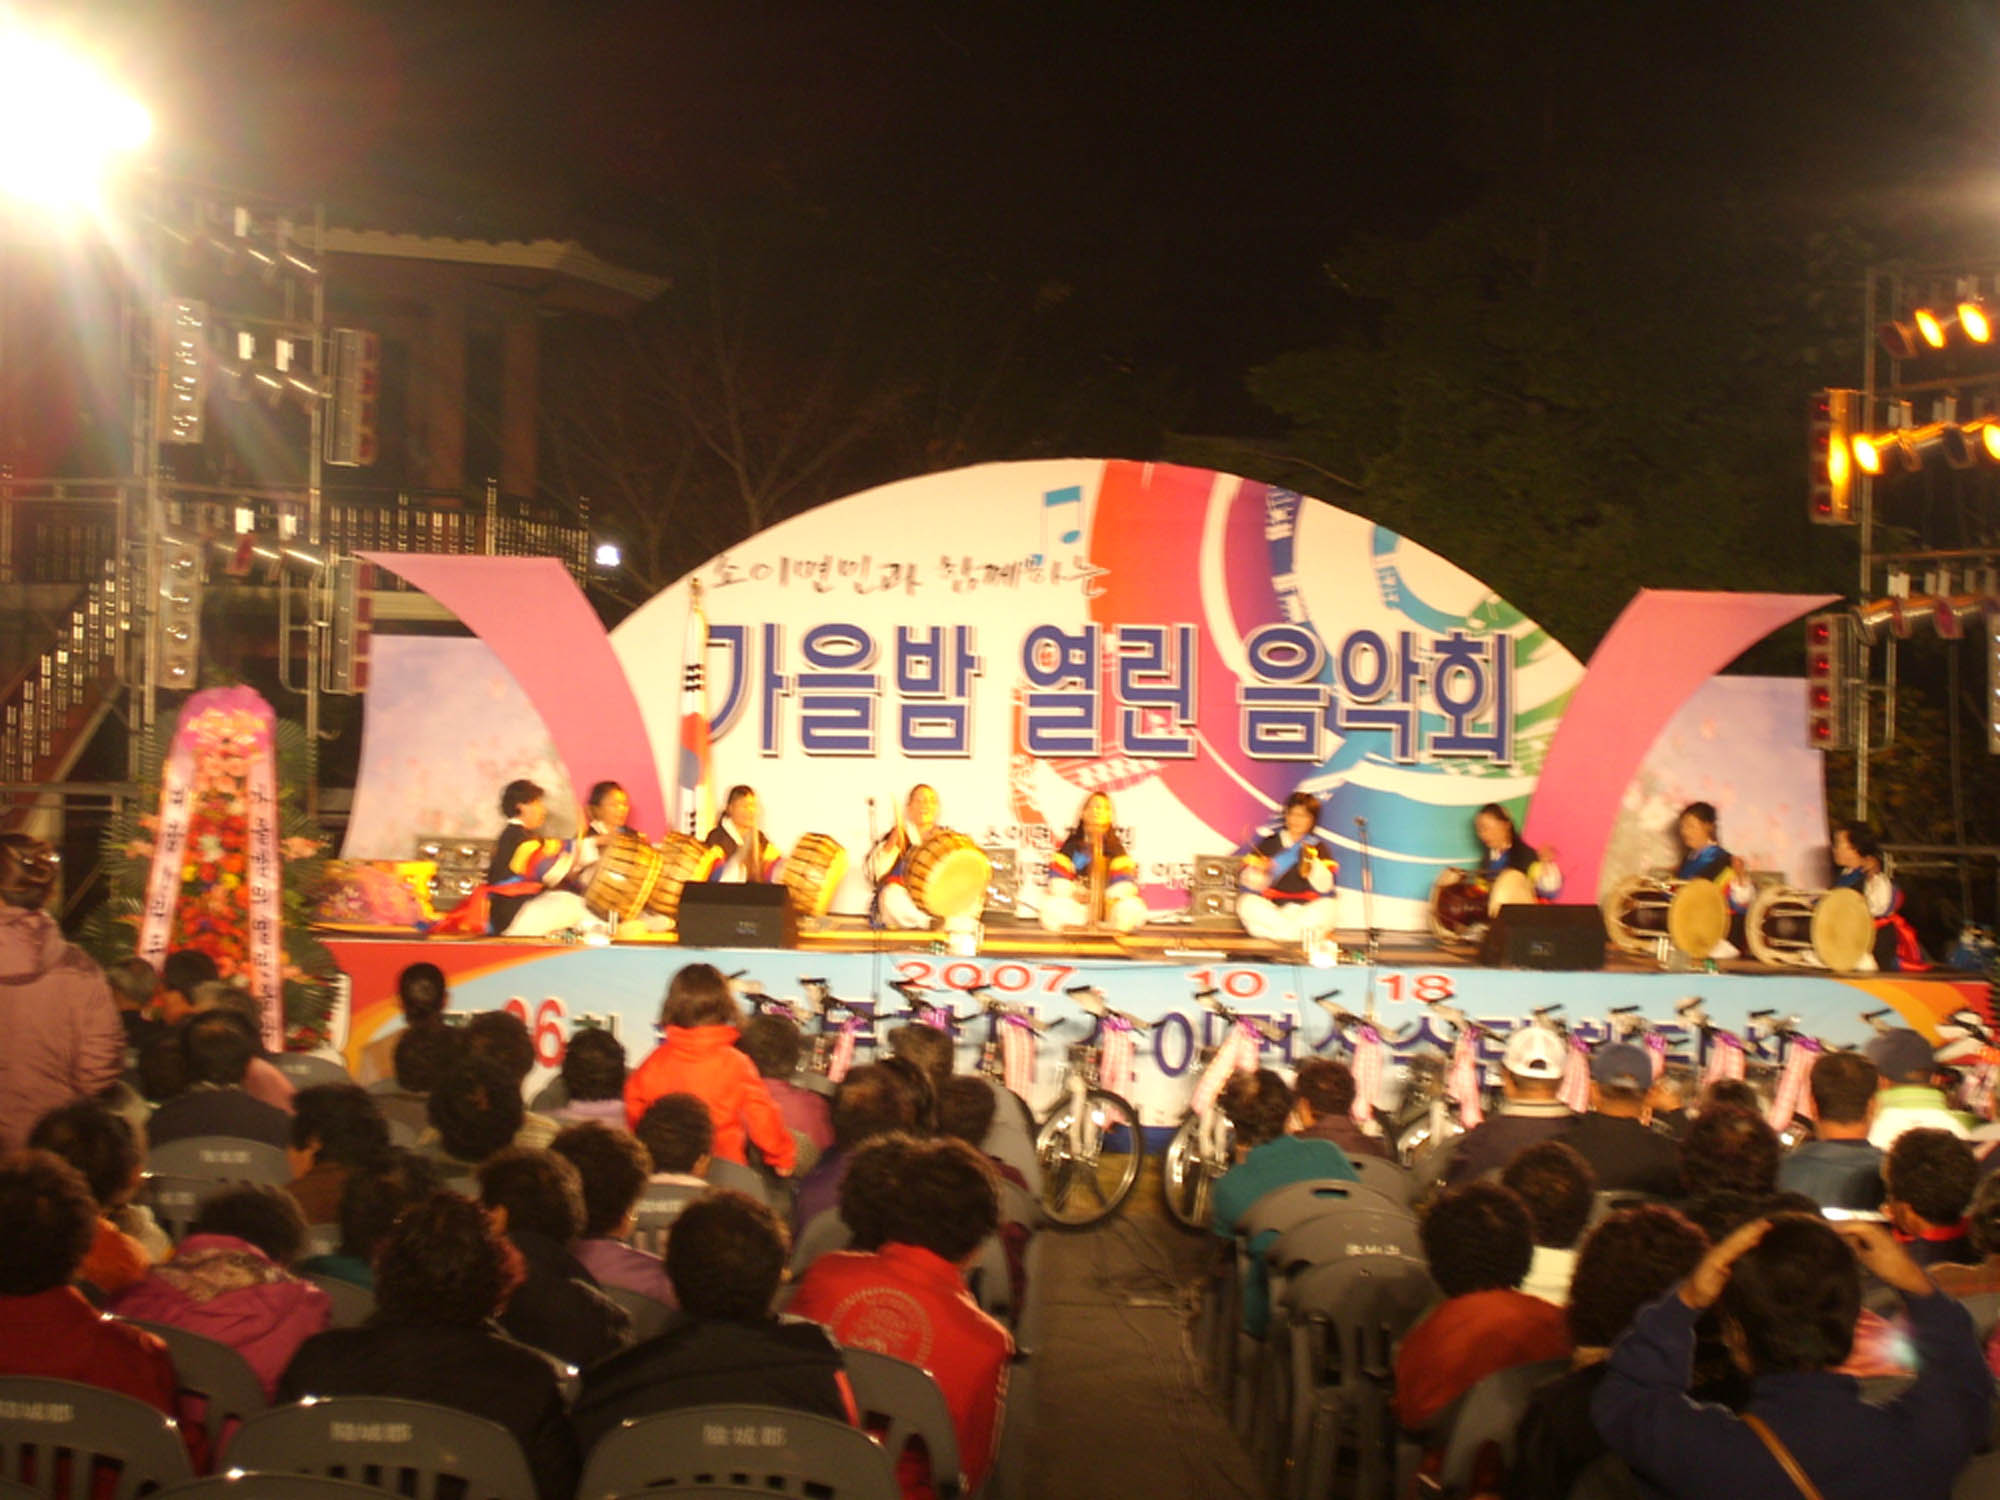 소이면 가을밤 열린 음악회가 다채로운 공연과 함께 열렸다.